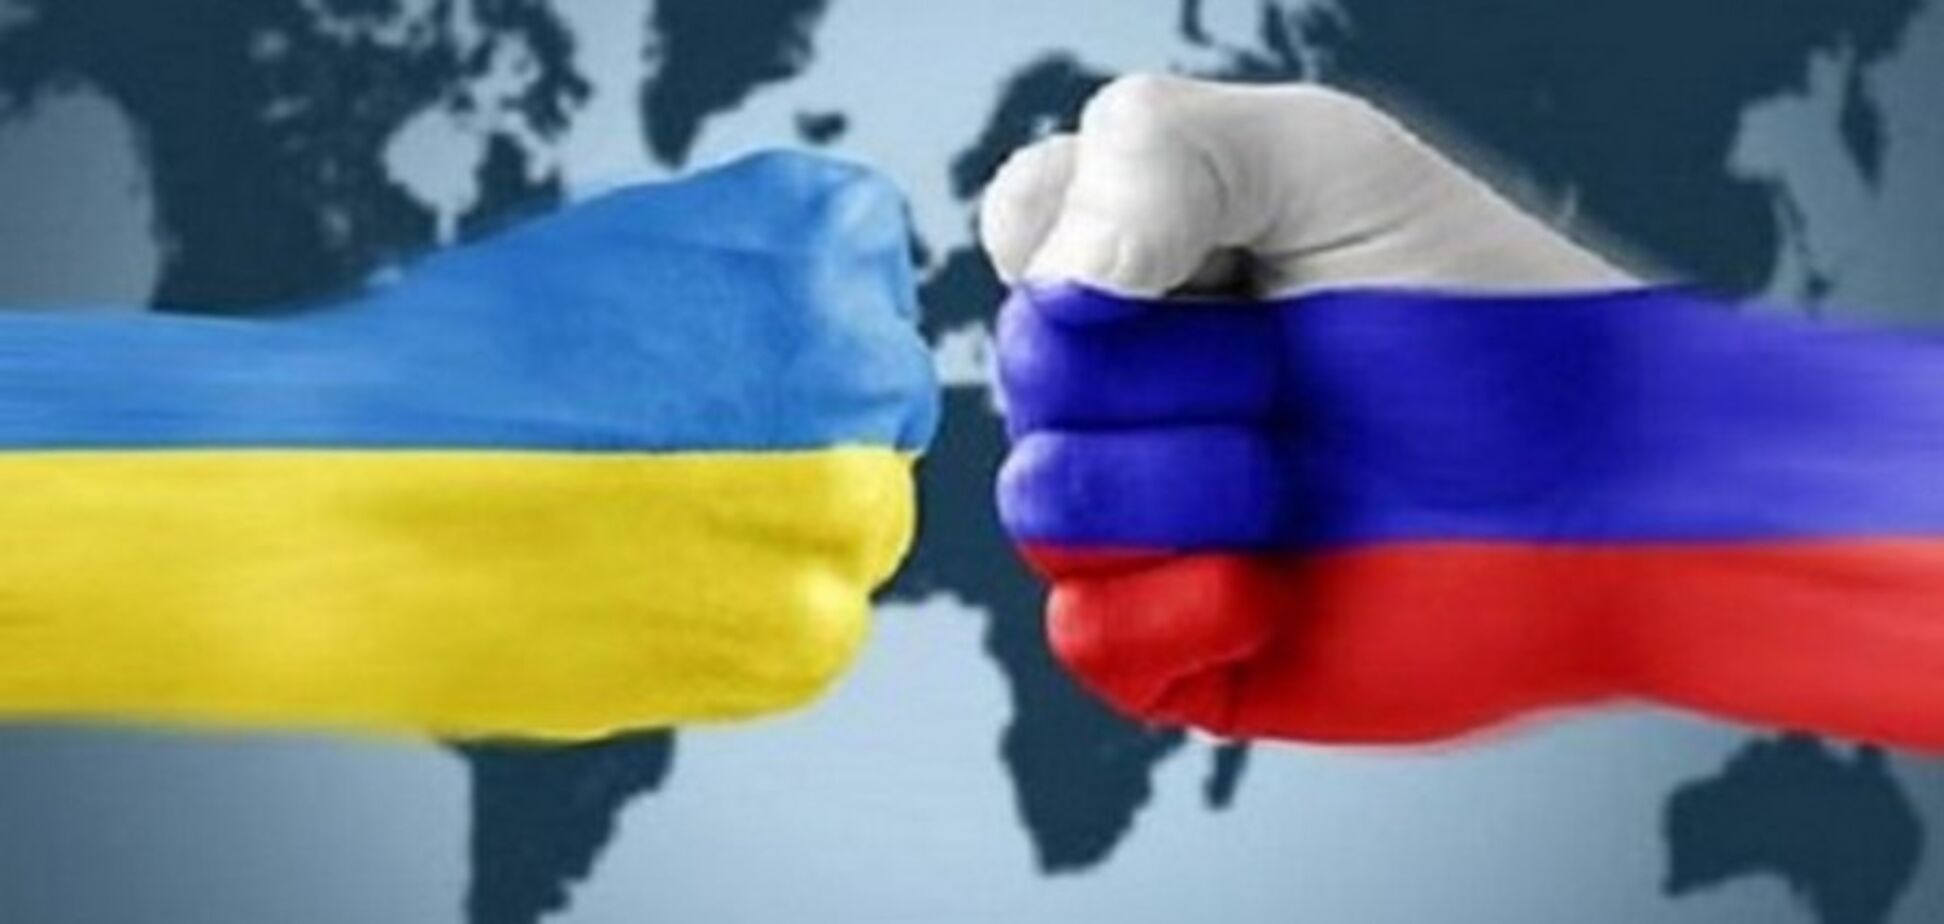 Кремль готує реванш в Україні: озвучено сценарій на 2019 рік